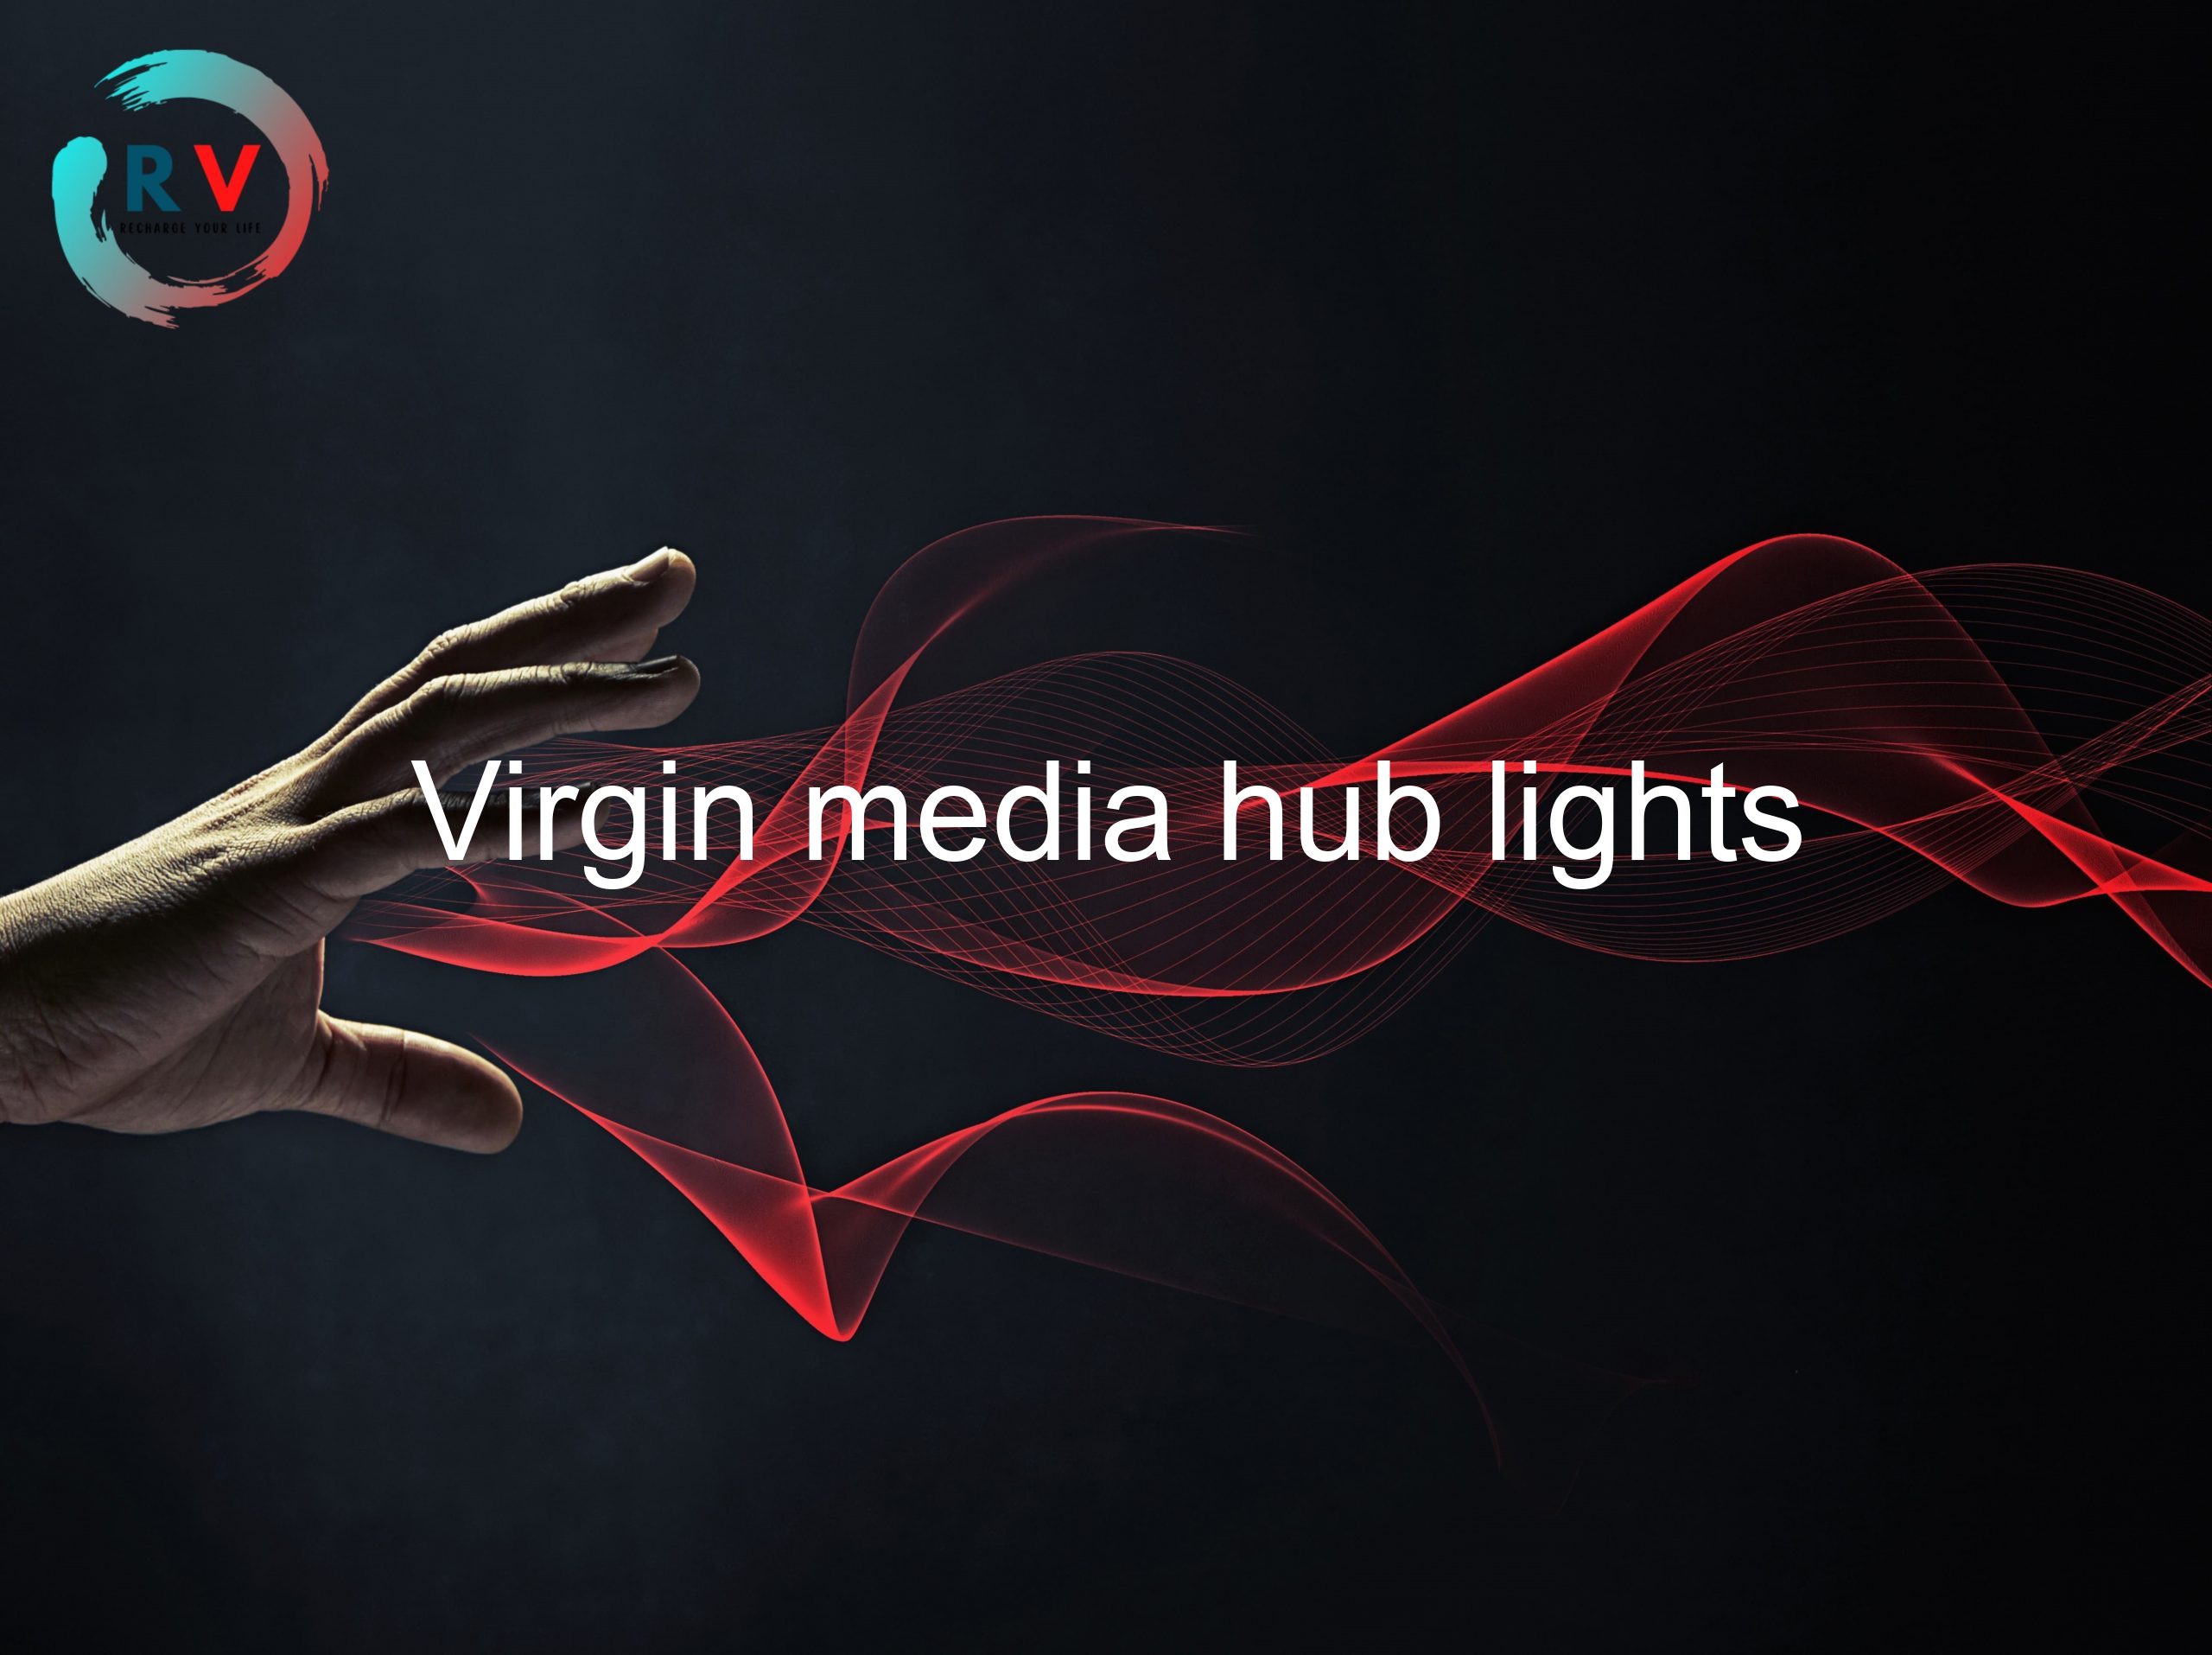 Virgin media hub lights